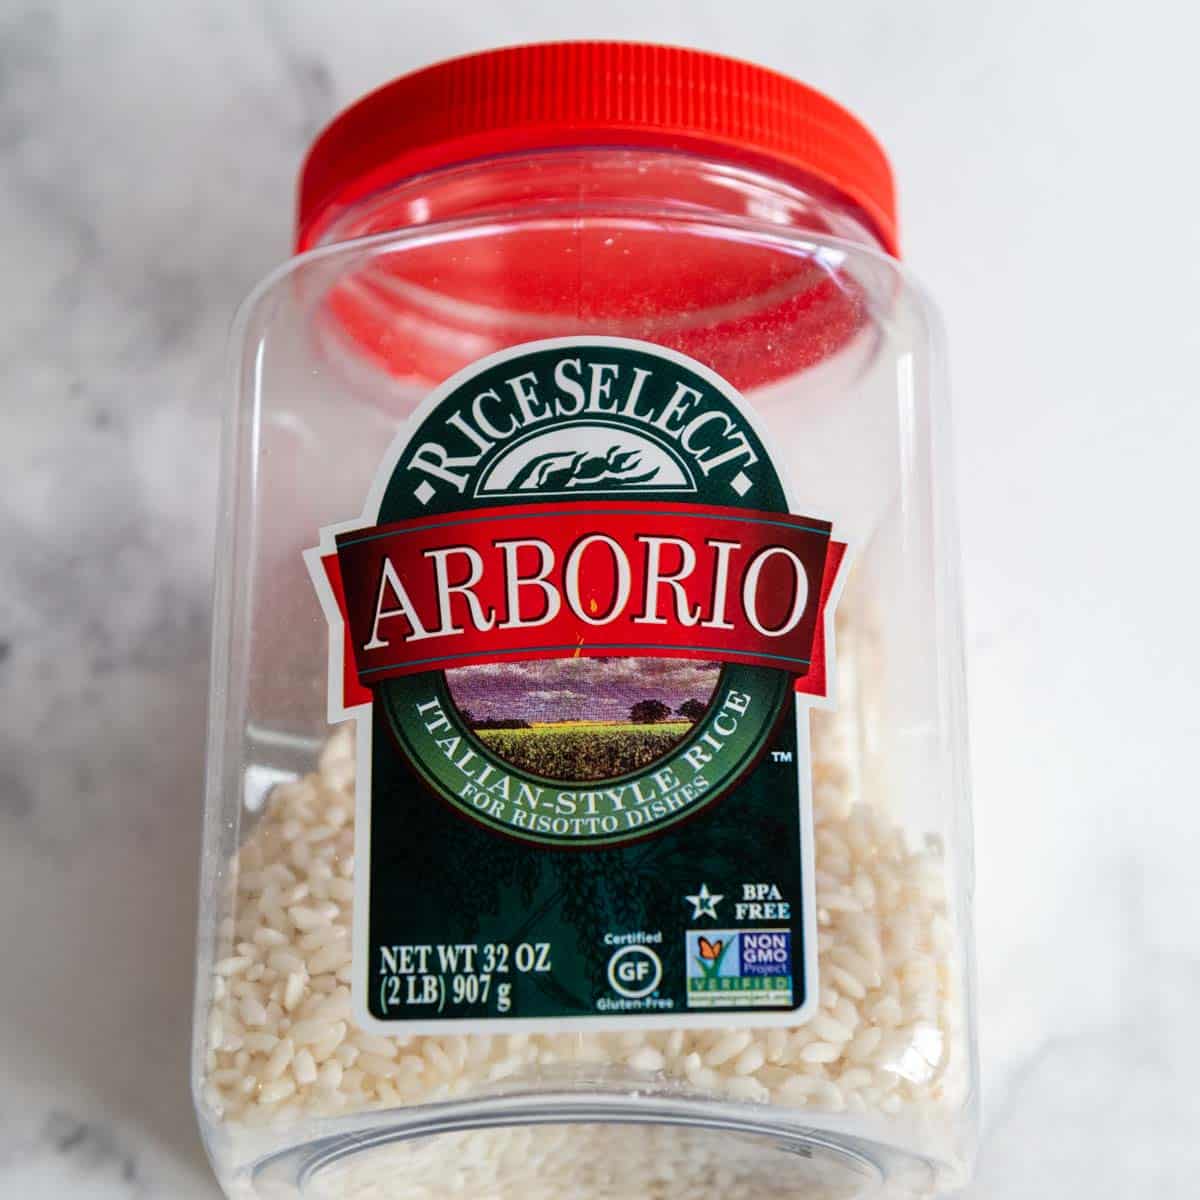 gluten-free arborio rice container.